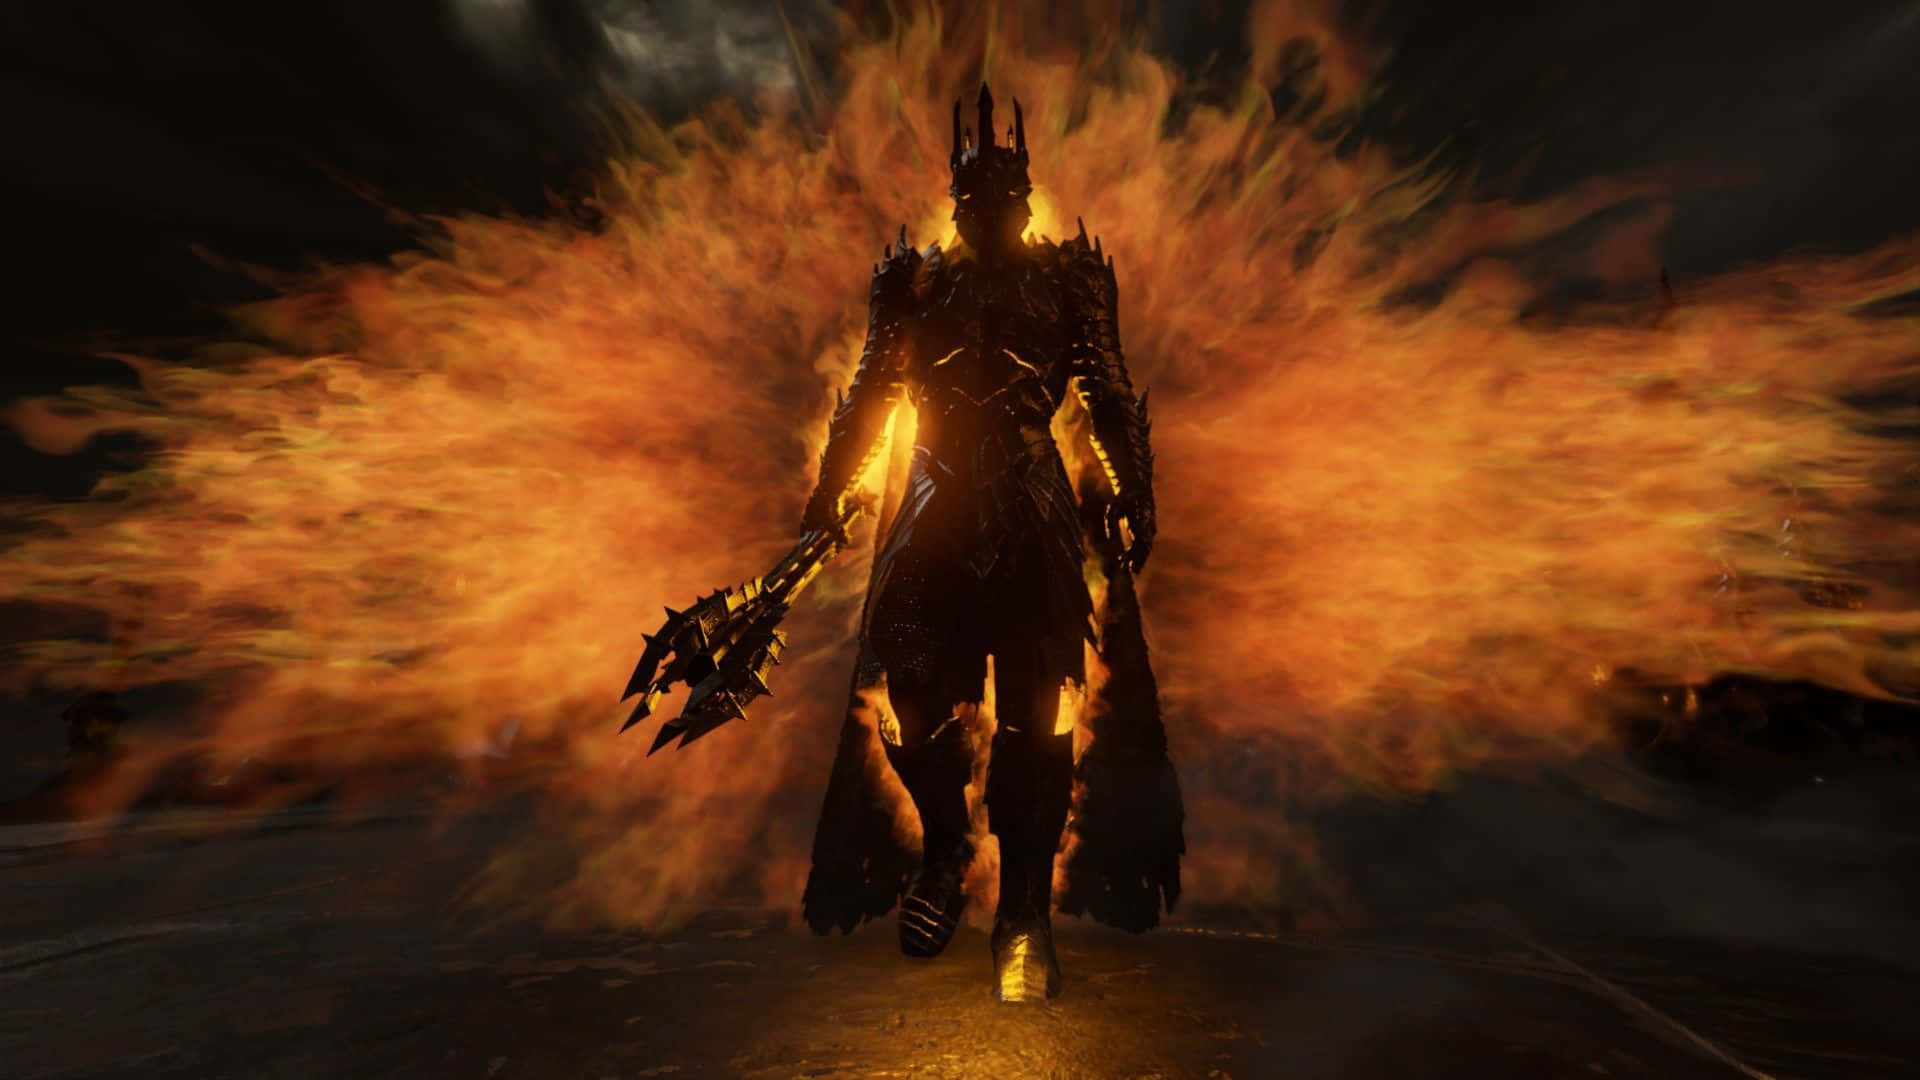 A Dark Knight In A Fire Costume Wallpaper